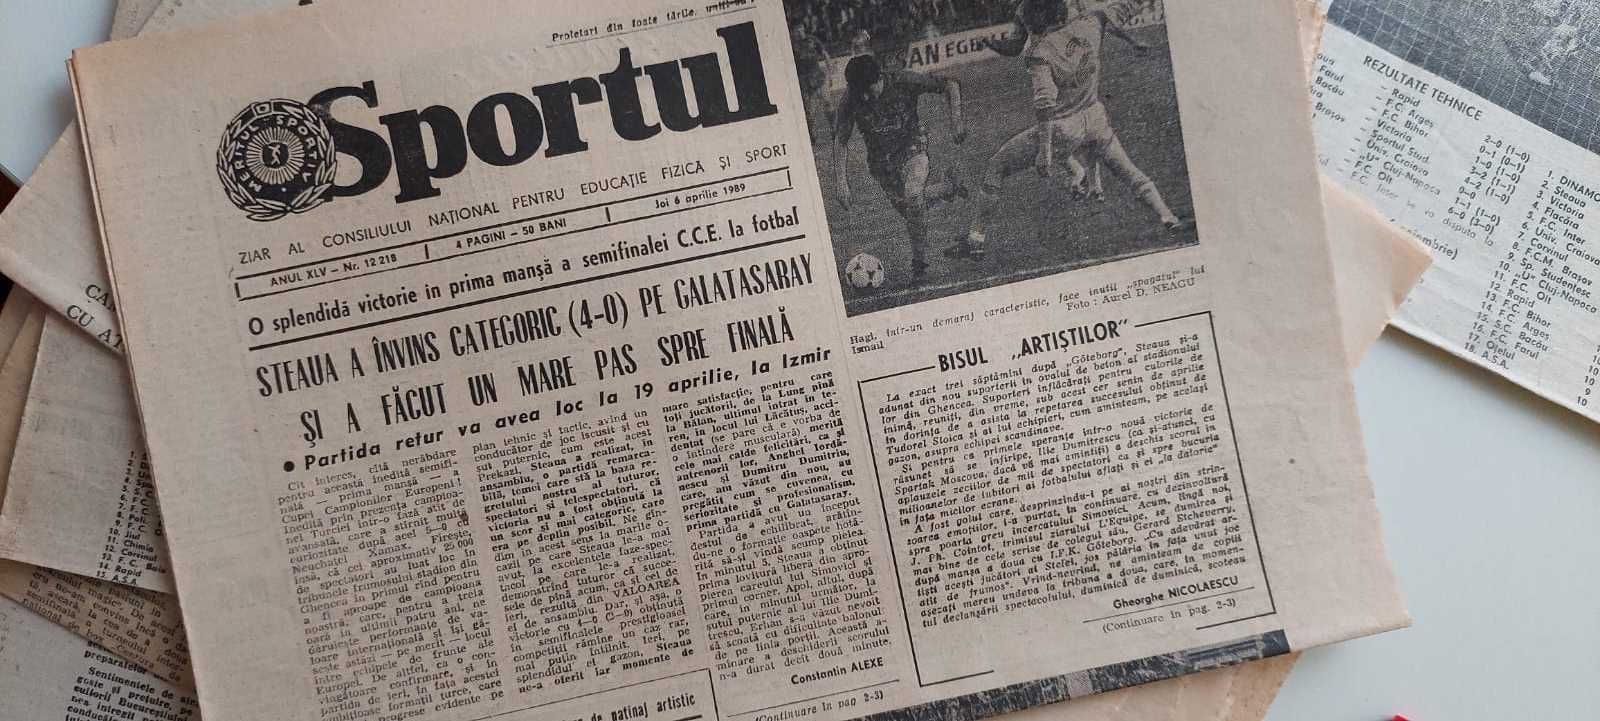 Ziare vechi Sportul, exemplare rar de găsit